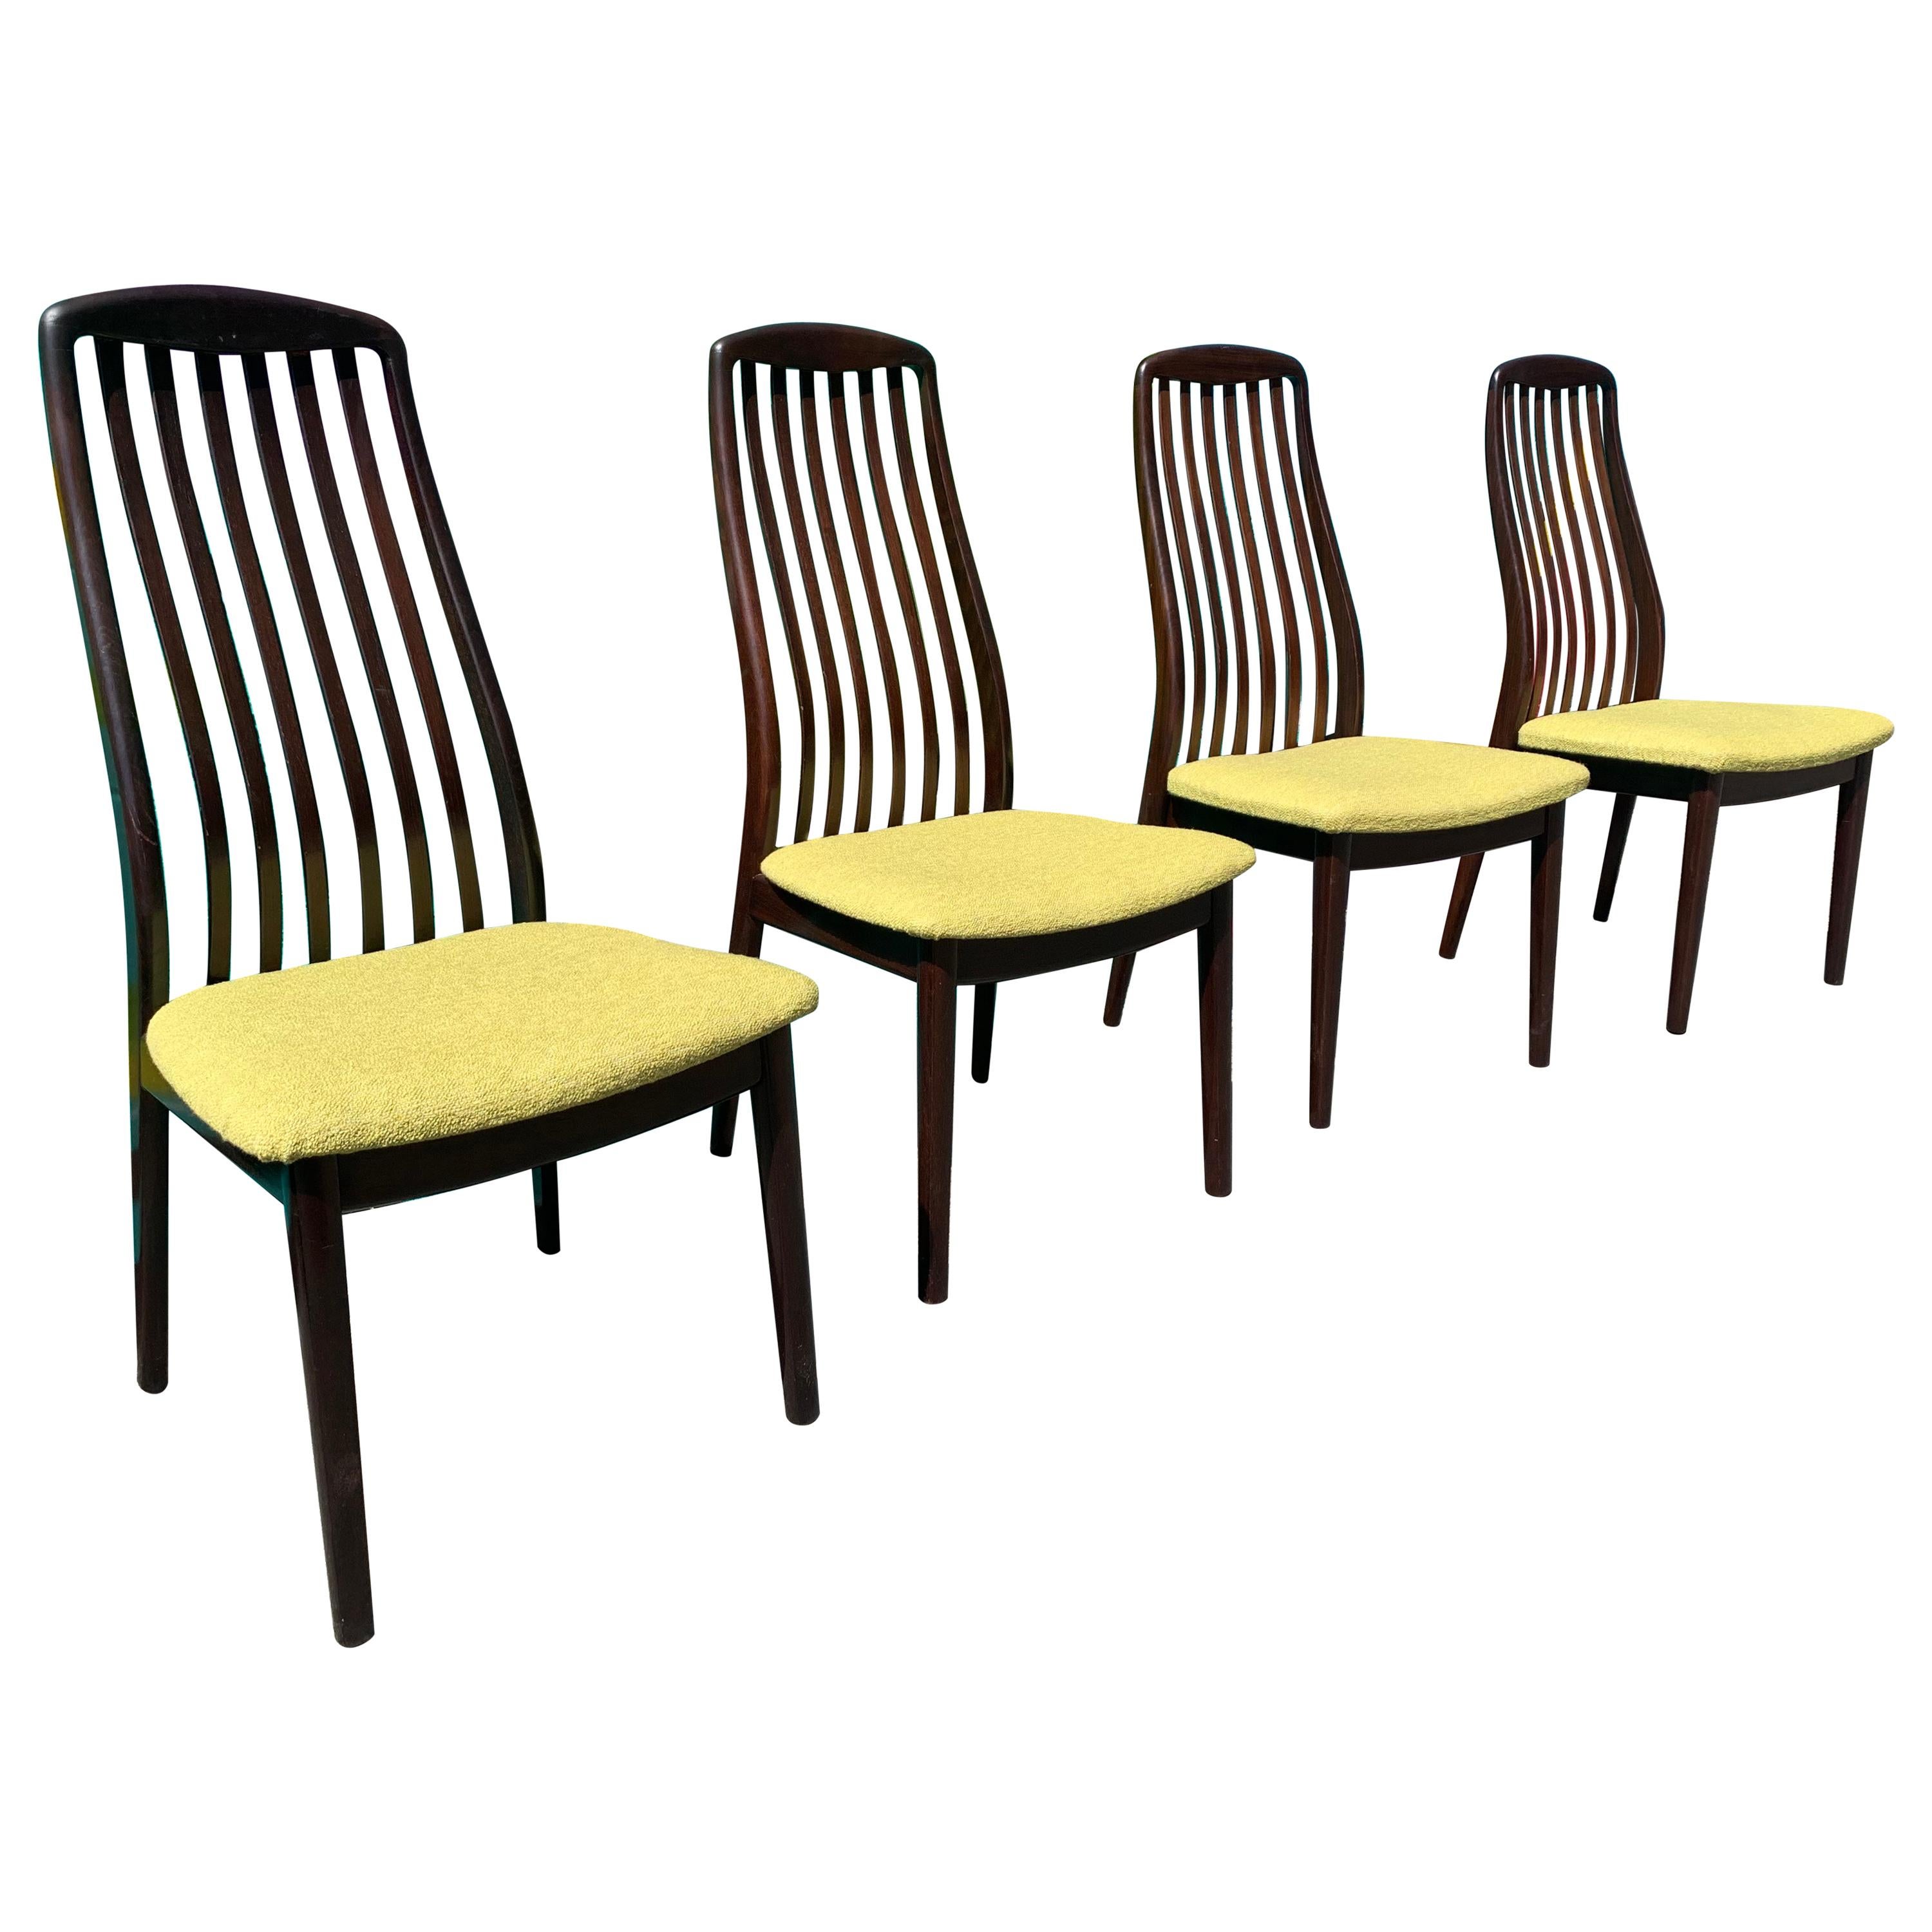 Set of 4 Danish Modern Teak Sculptural Dining Chairs by Dyrlund